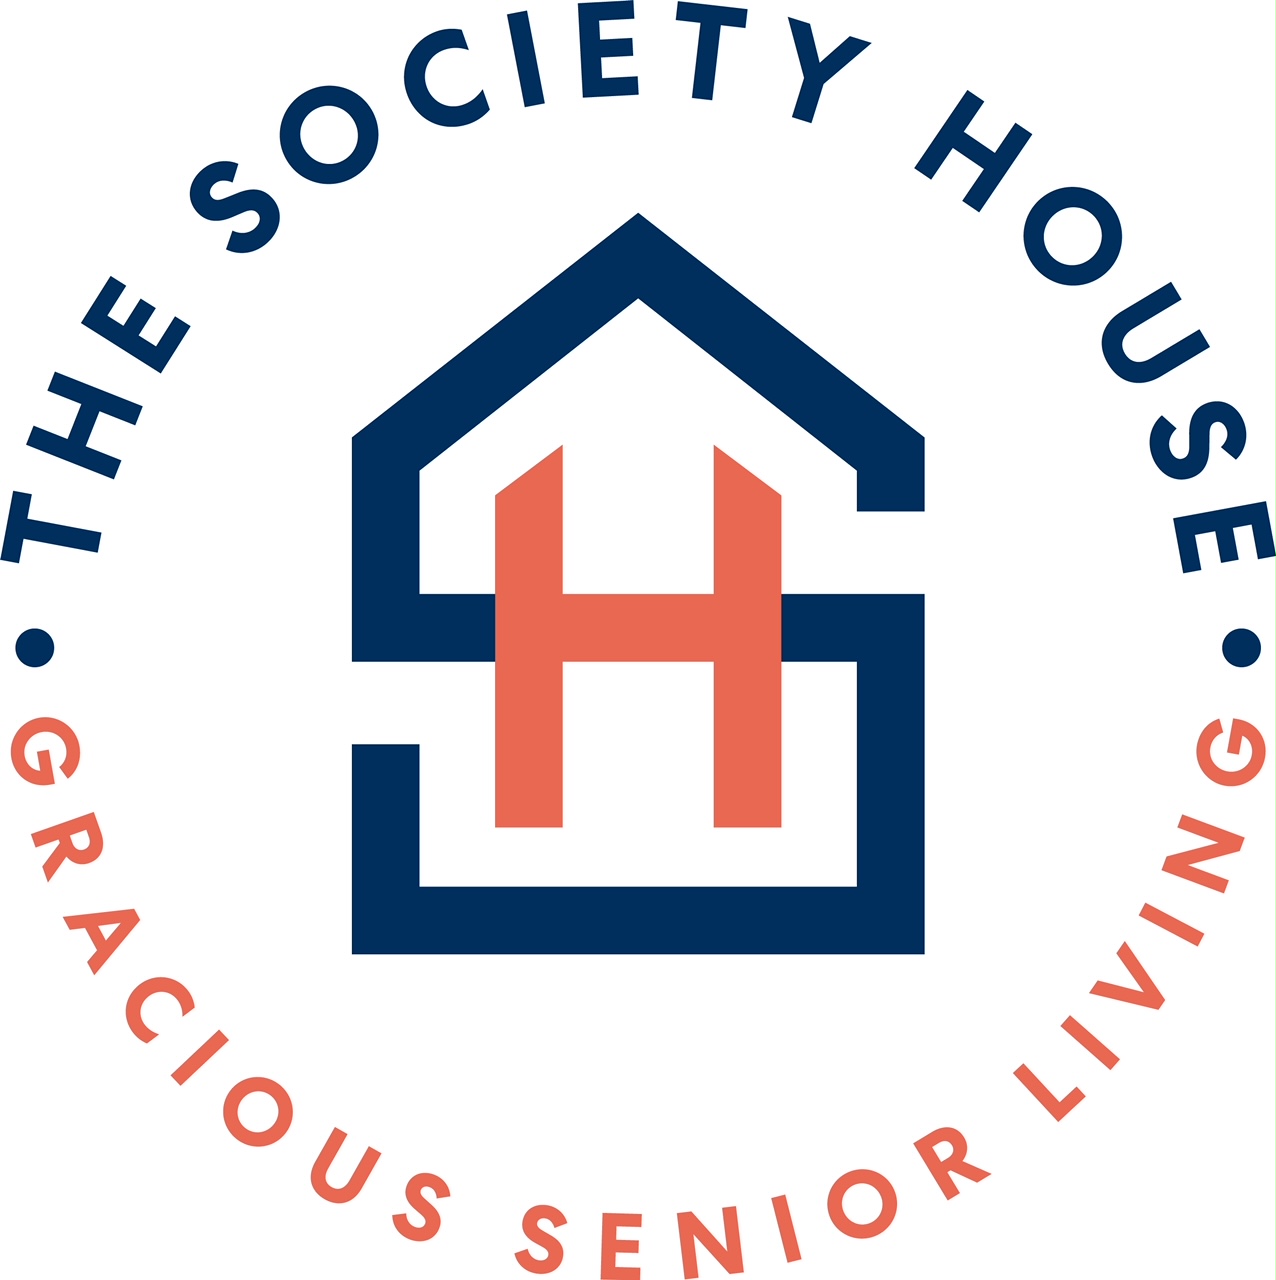 The Society House's Logo